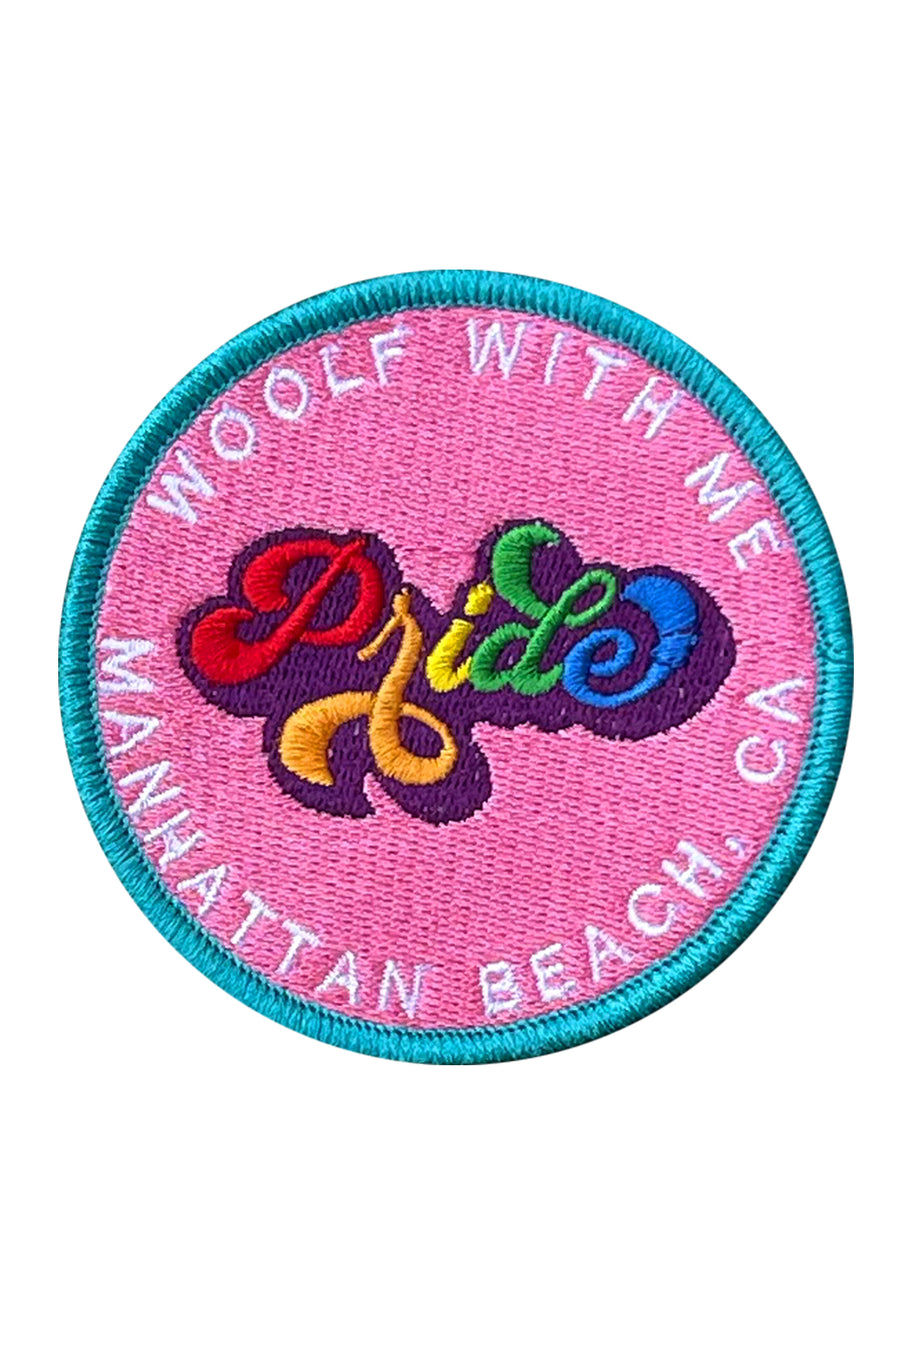 Patch Pride Manhattan Beach, Ca